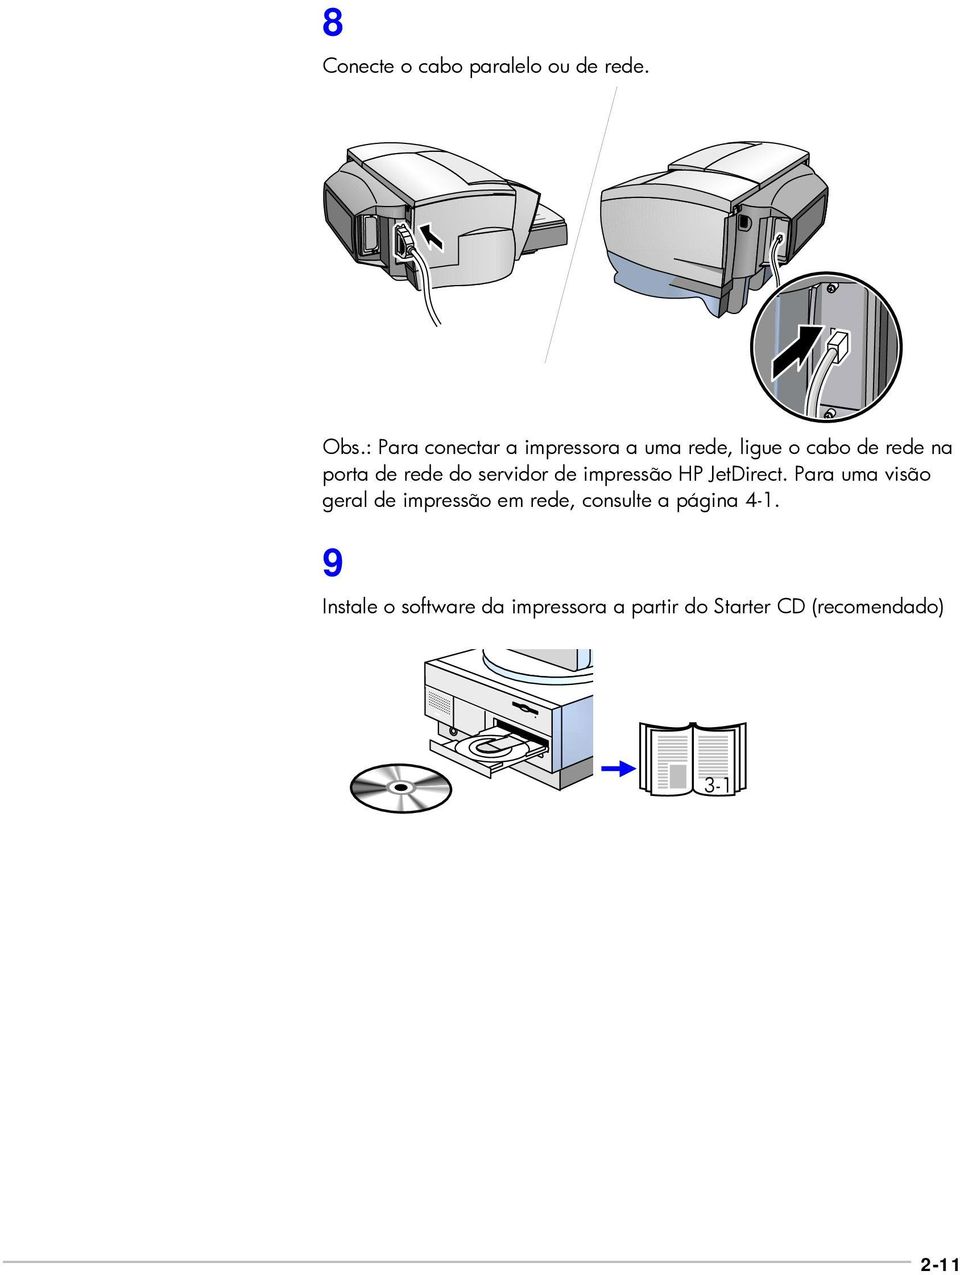 rede do servidor de impressão HP JetDirect.